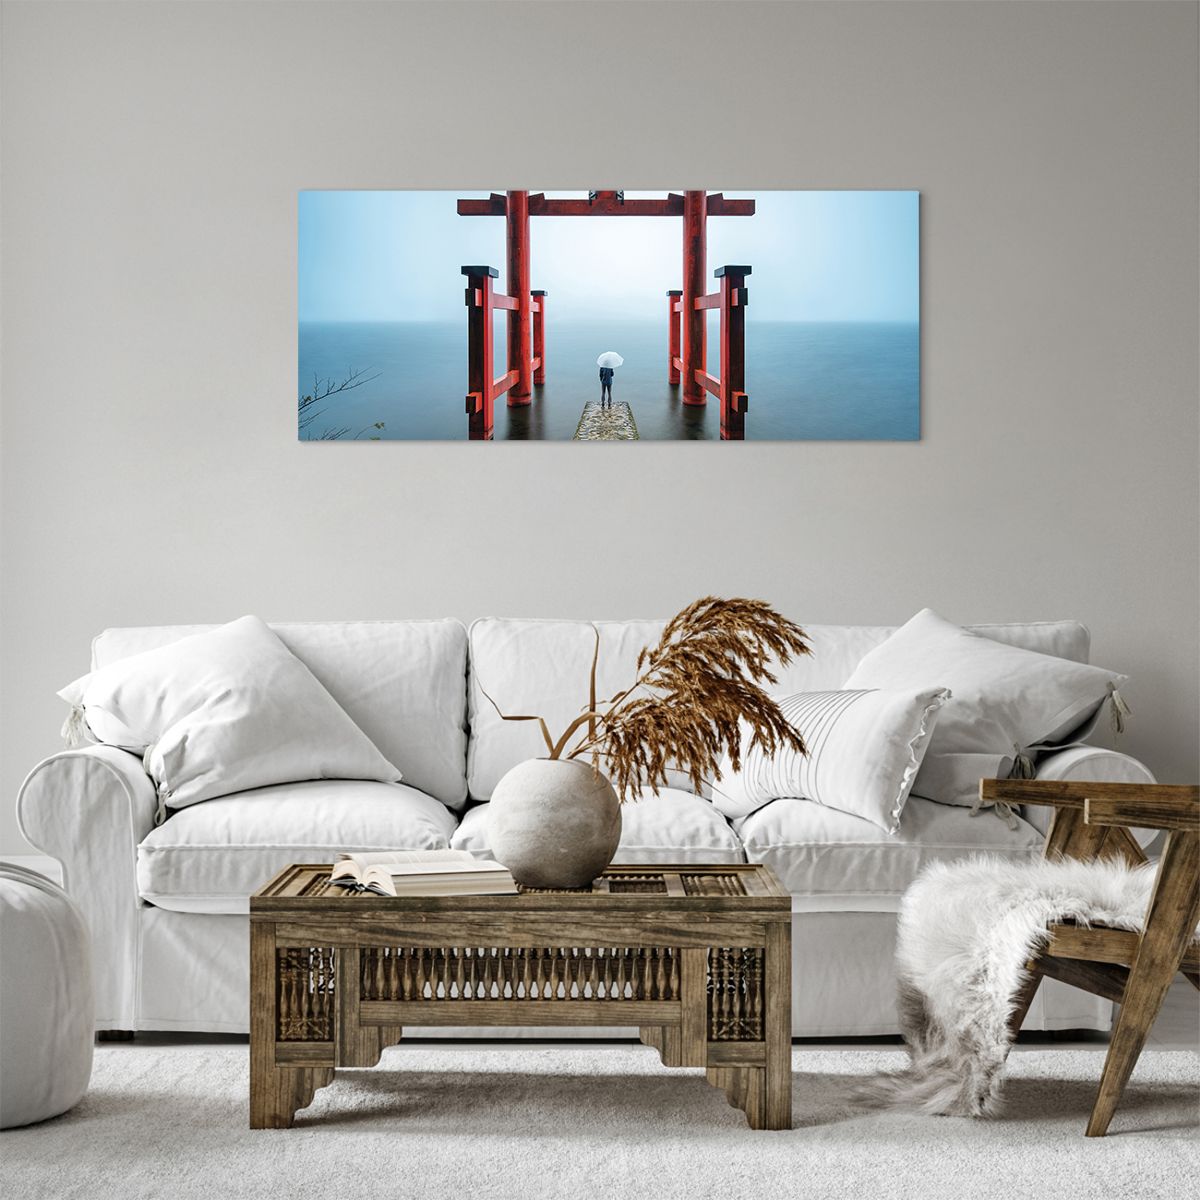 Obrazy na płótnie Azja, Obrazy na płótnie Świątynia Hakone, Obrazy na płótnie Japonia, Obrazy na płótnie Religia, Obrazy na płótnie Kultura